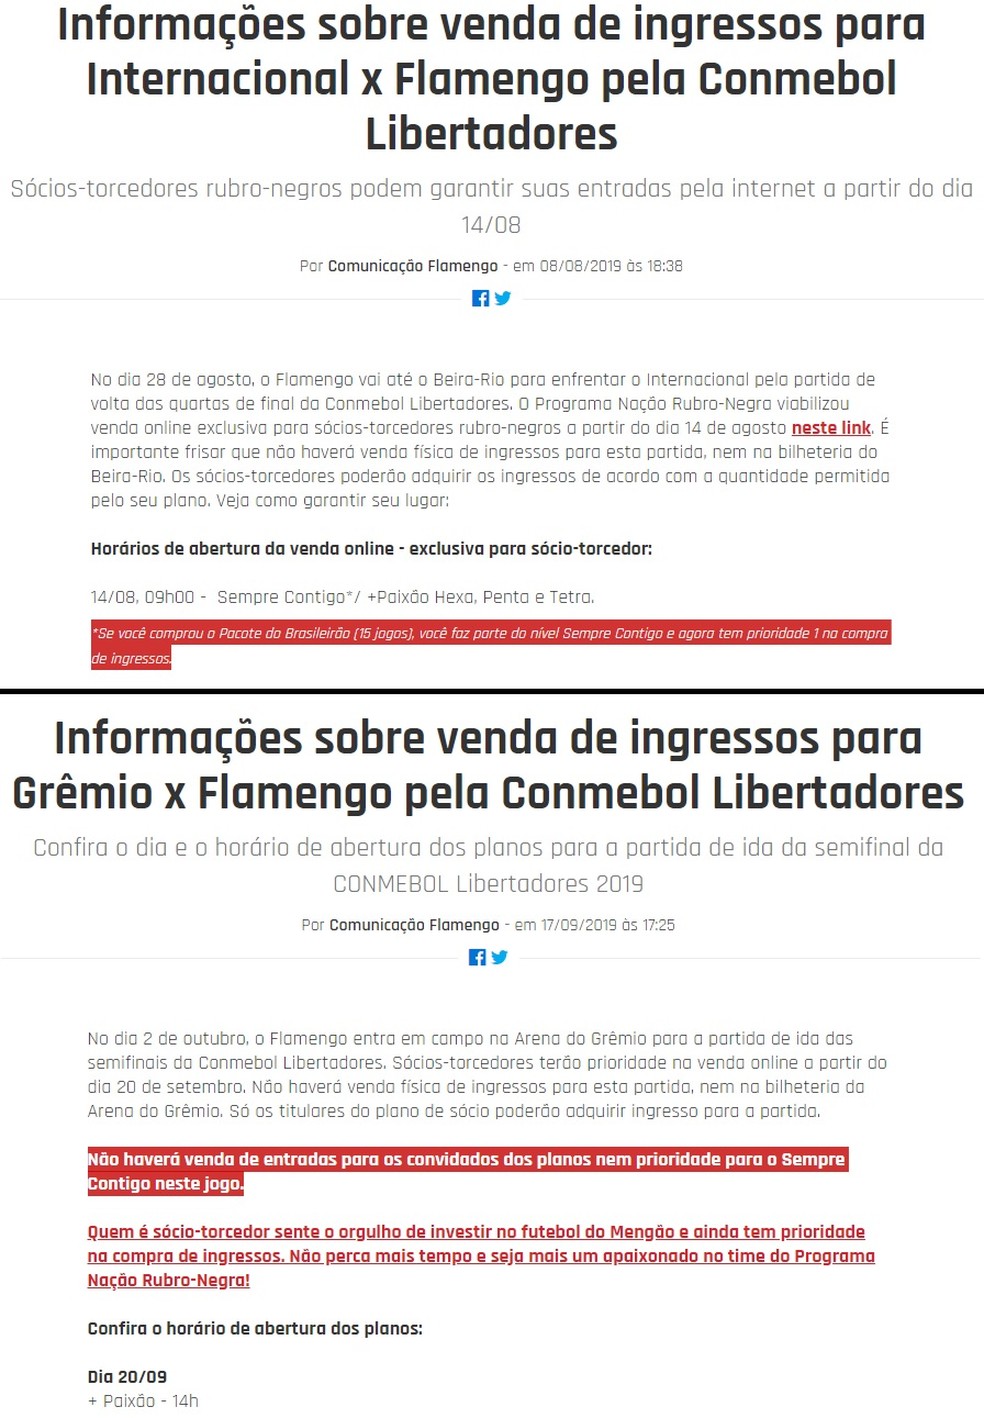 Notícias no site oficial tratam de forma diferente prioridade do pacote contra Inter e Grêmio — Foto: Reprodução